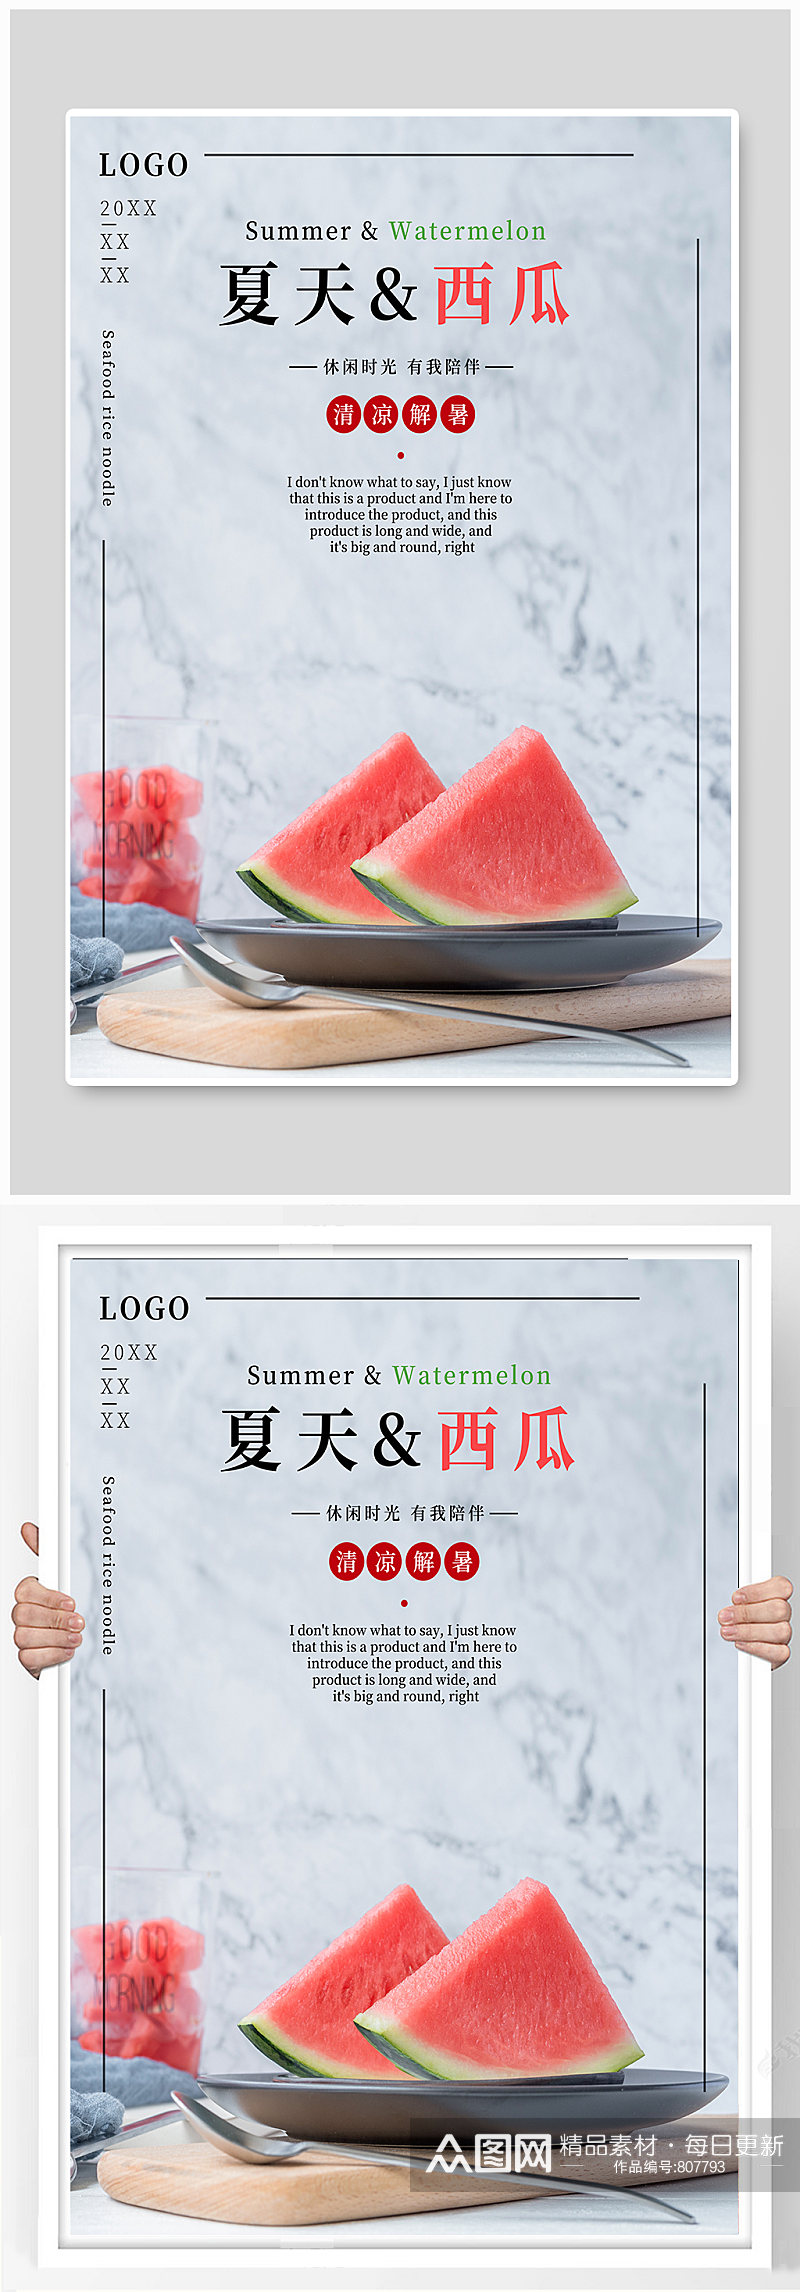 夏日解暑美食西瓜水果饮料促销海报素材